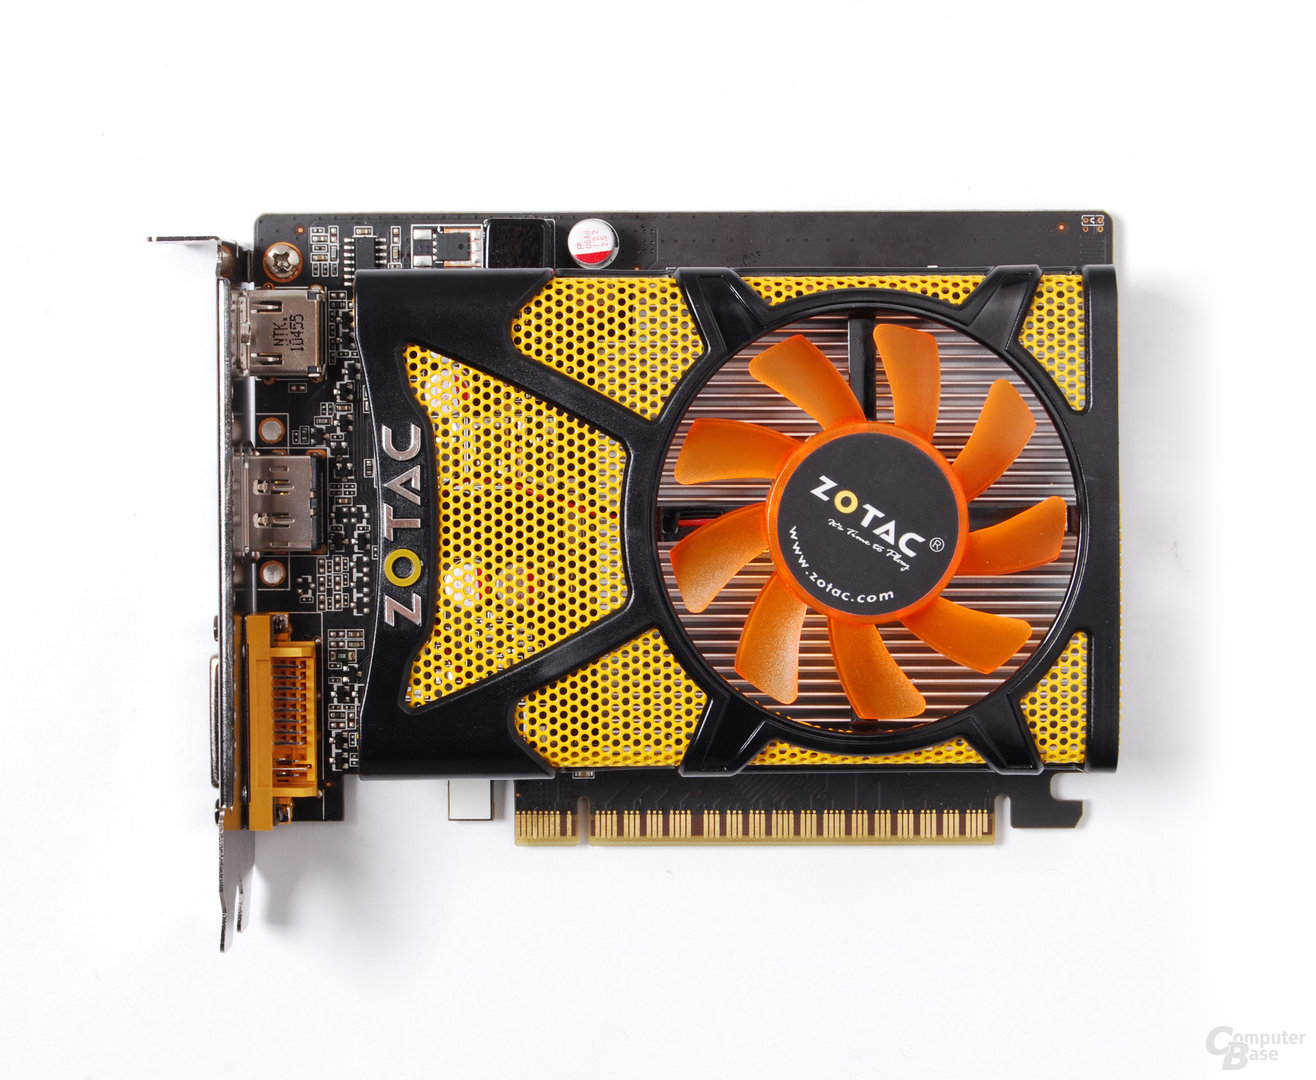 Zotac GeForce GT 440 mit 1.024 MB GDDR5